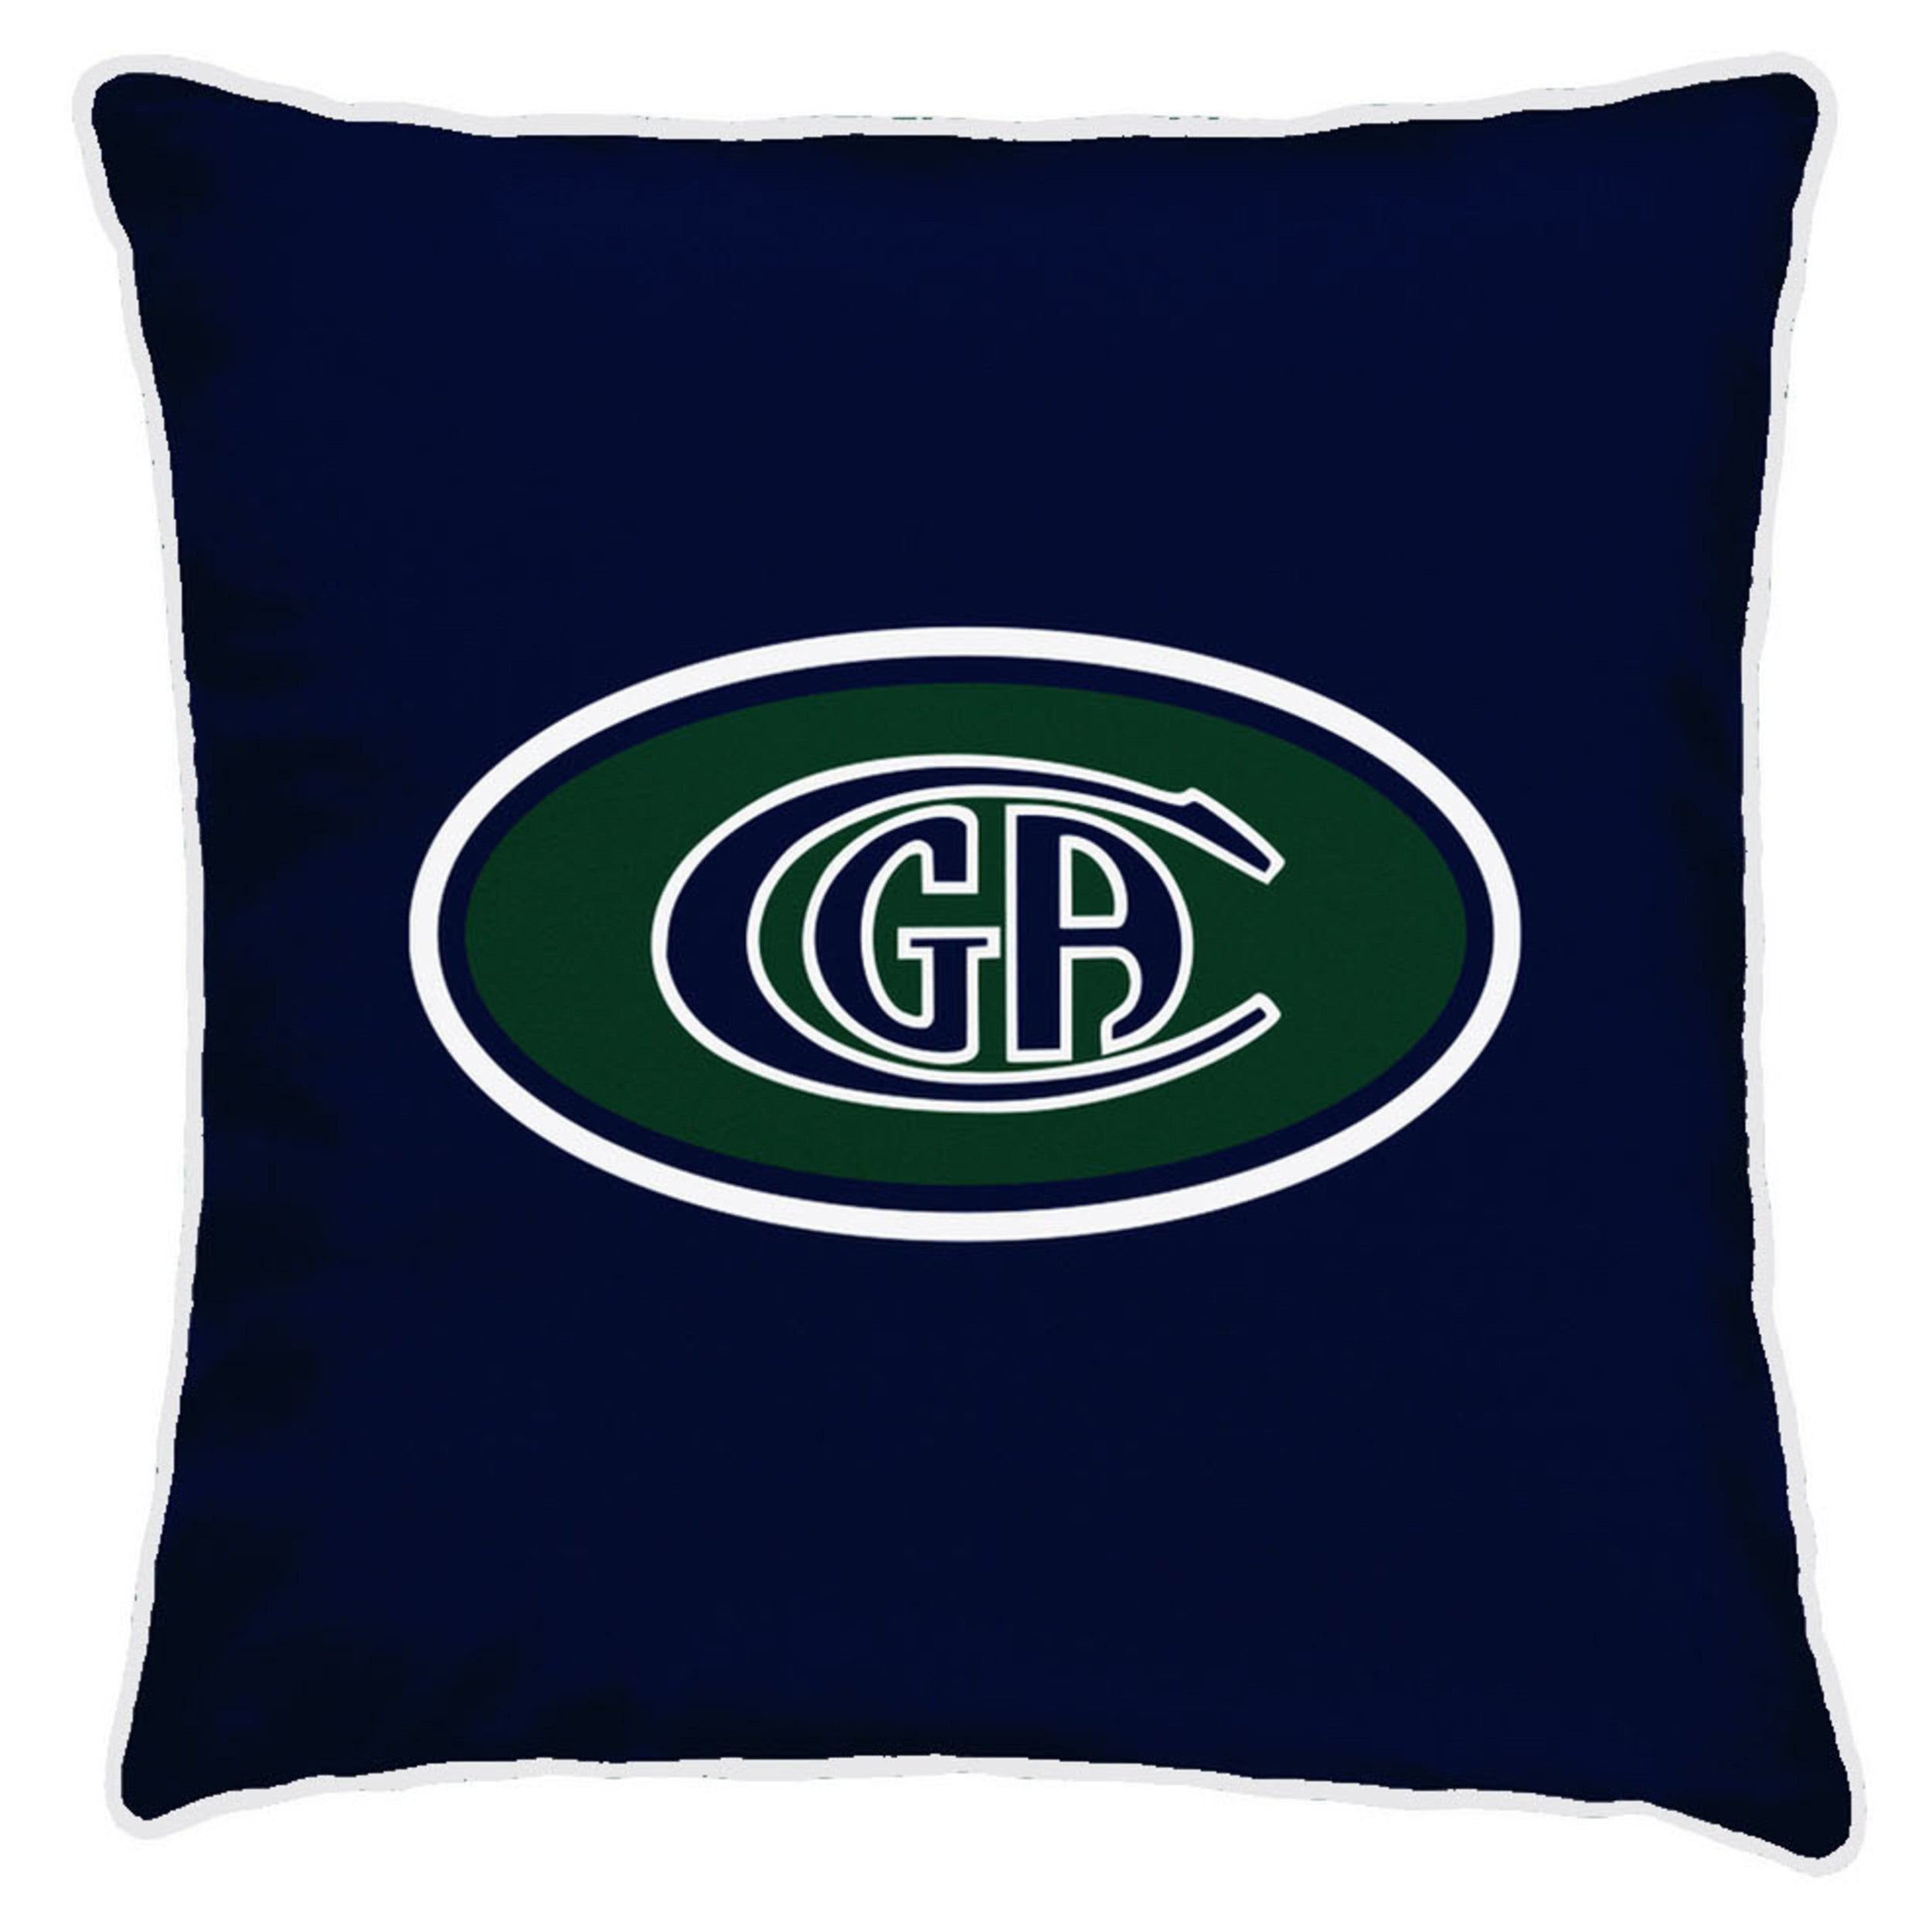 CGA Navy Throw Pillow